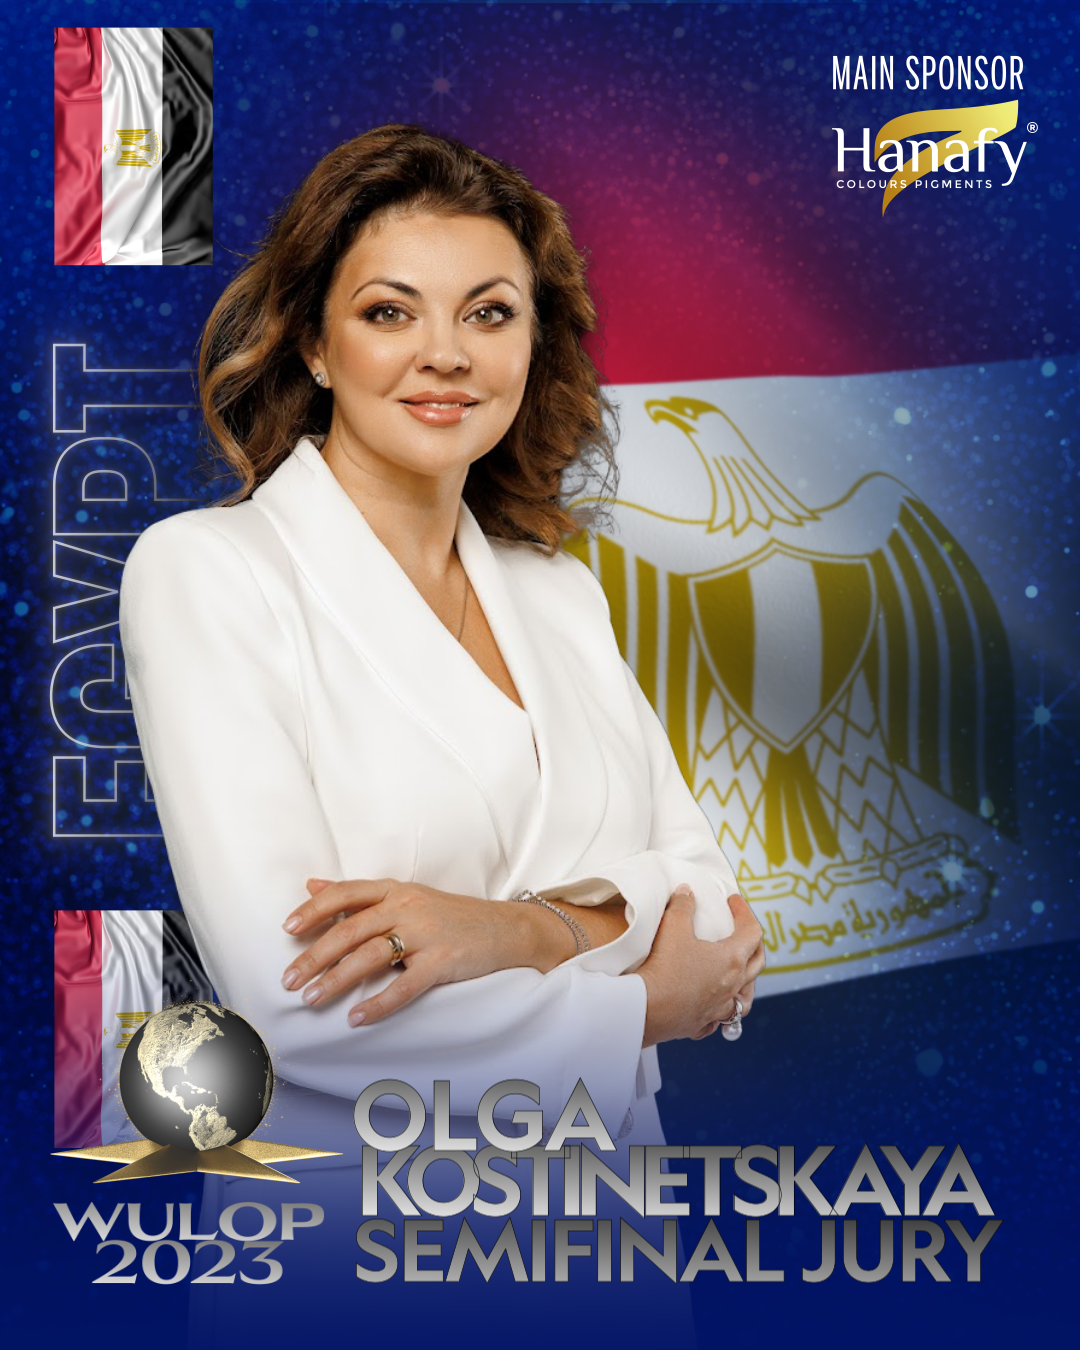 Olga Kostinetskaya EGYPT